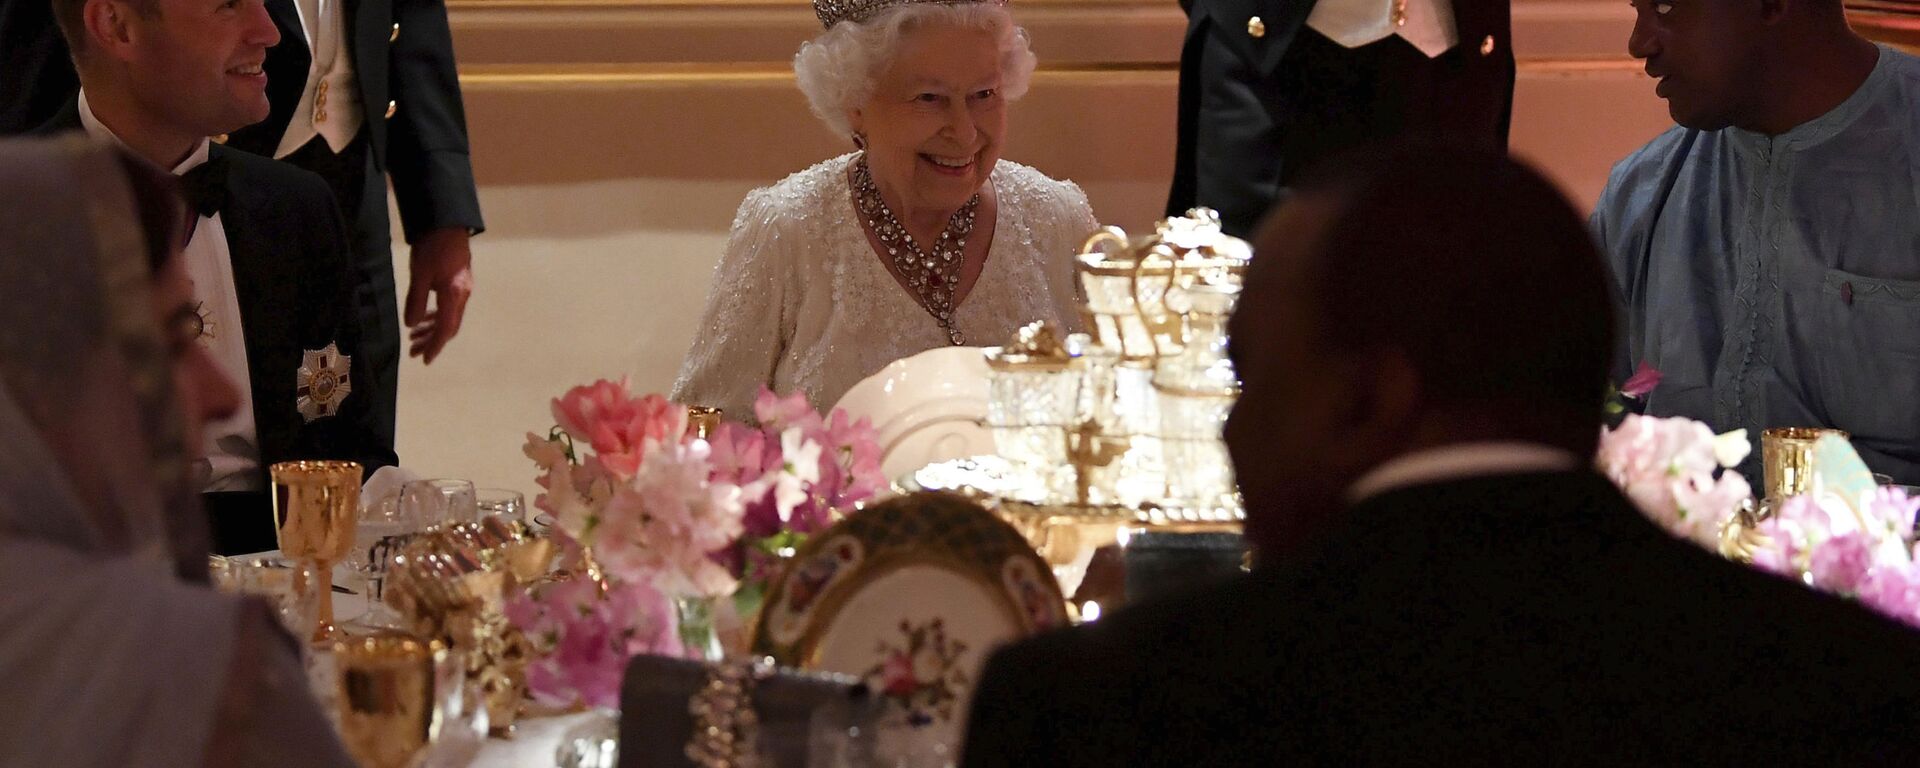 Nữ hoàng Elizabeth II trong bữa tối tại Cung điện Buckingham ở London - Sputnik Việt Nam, 1920, 03.10.2021